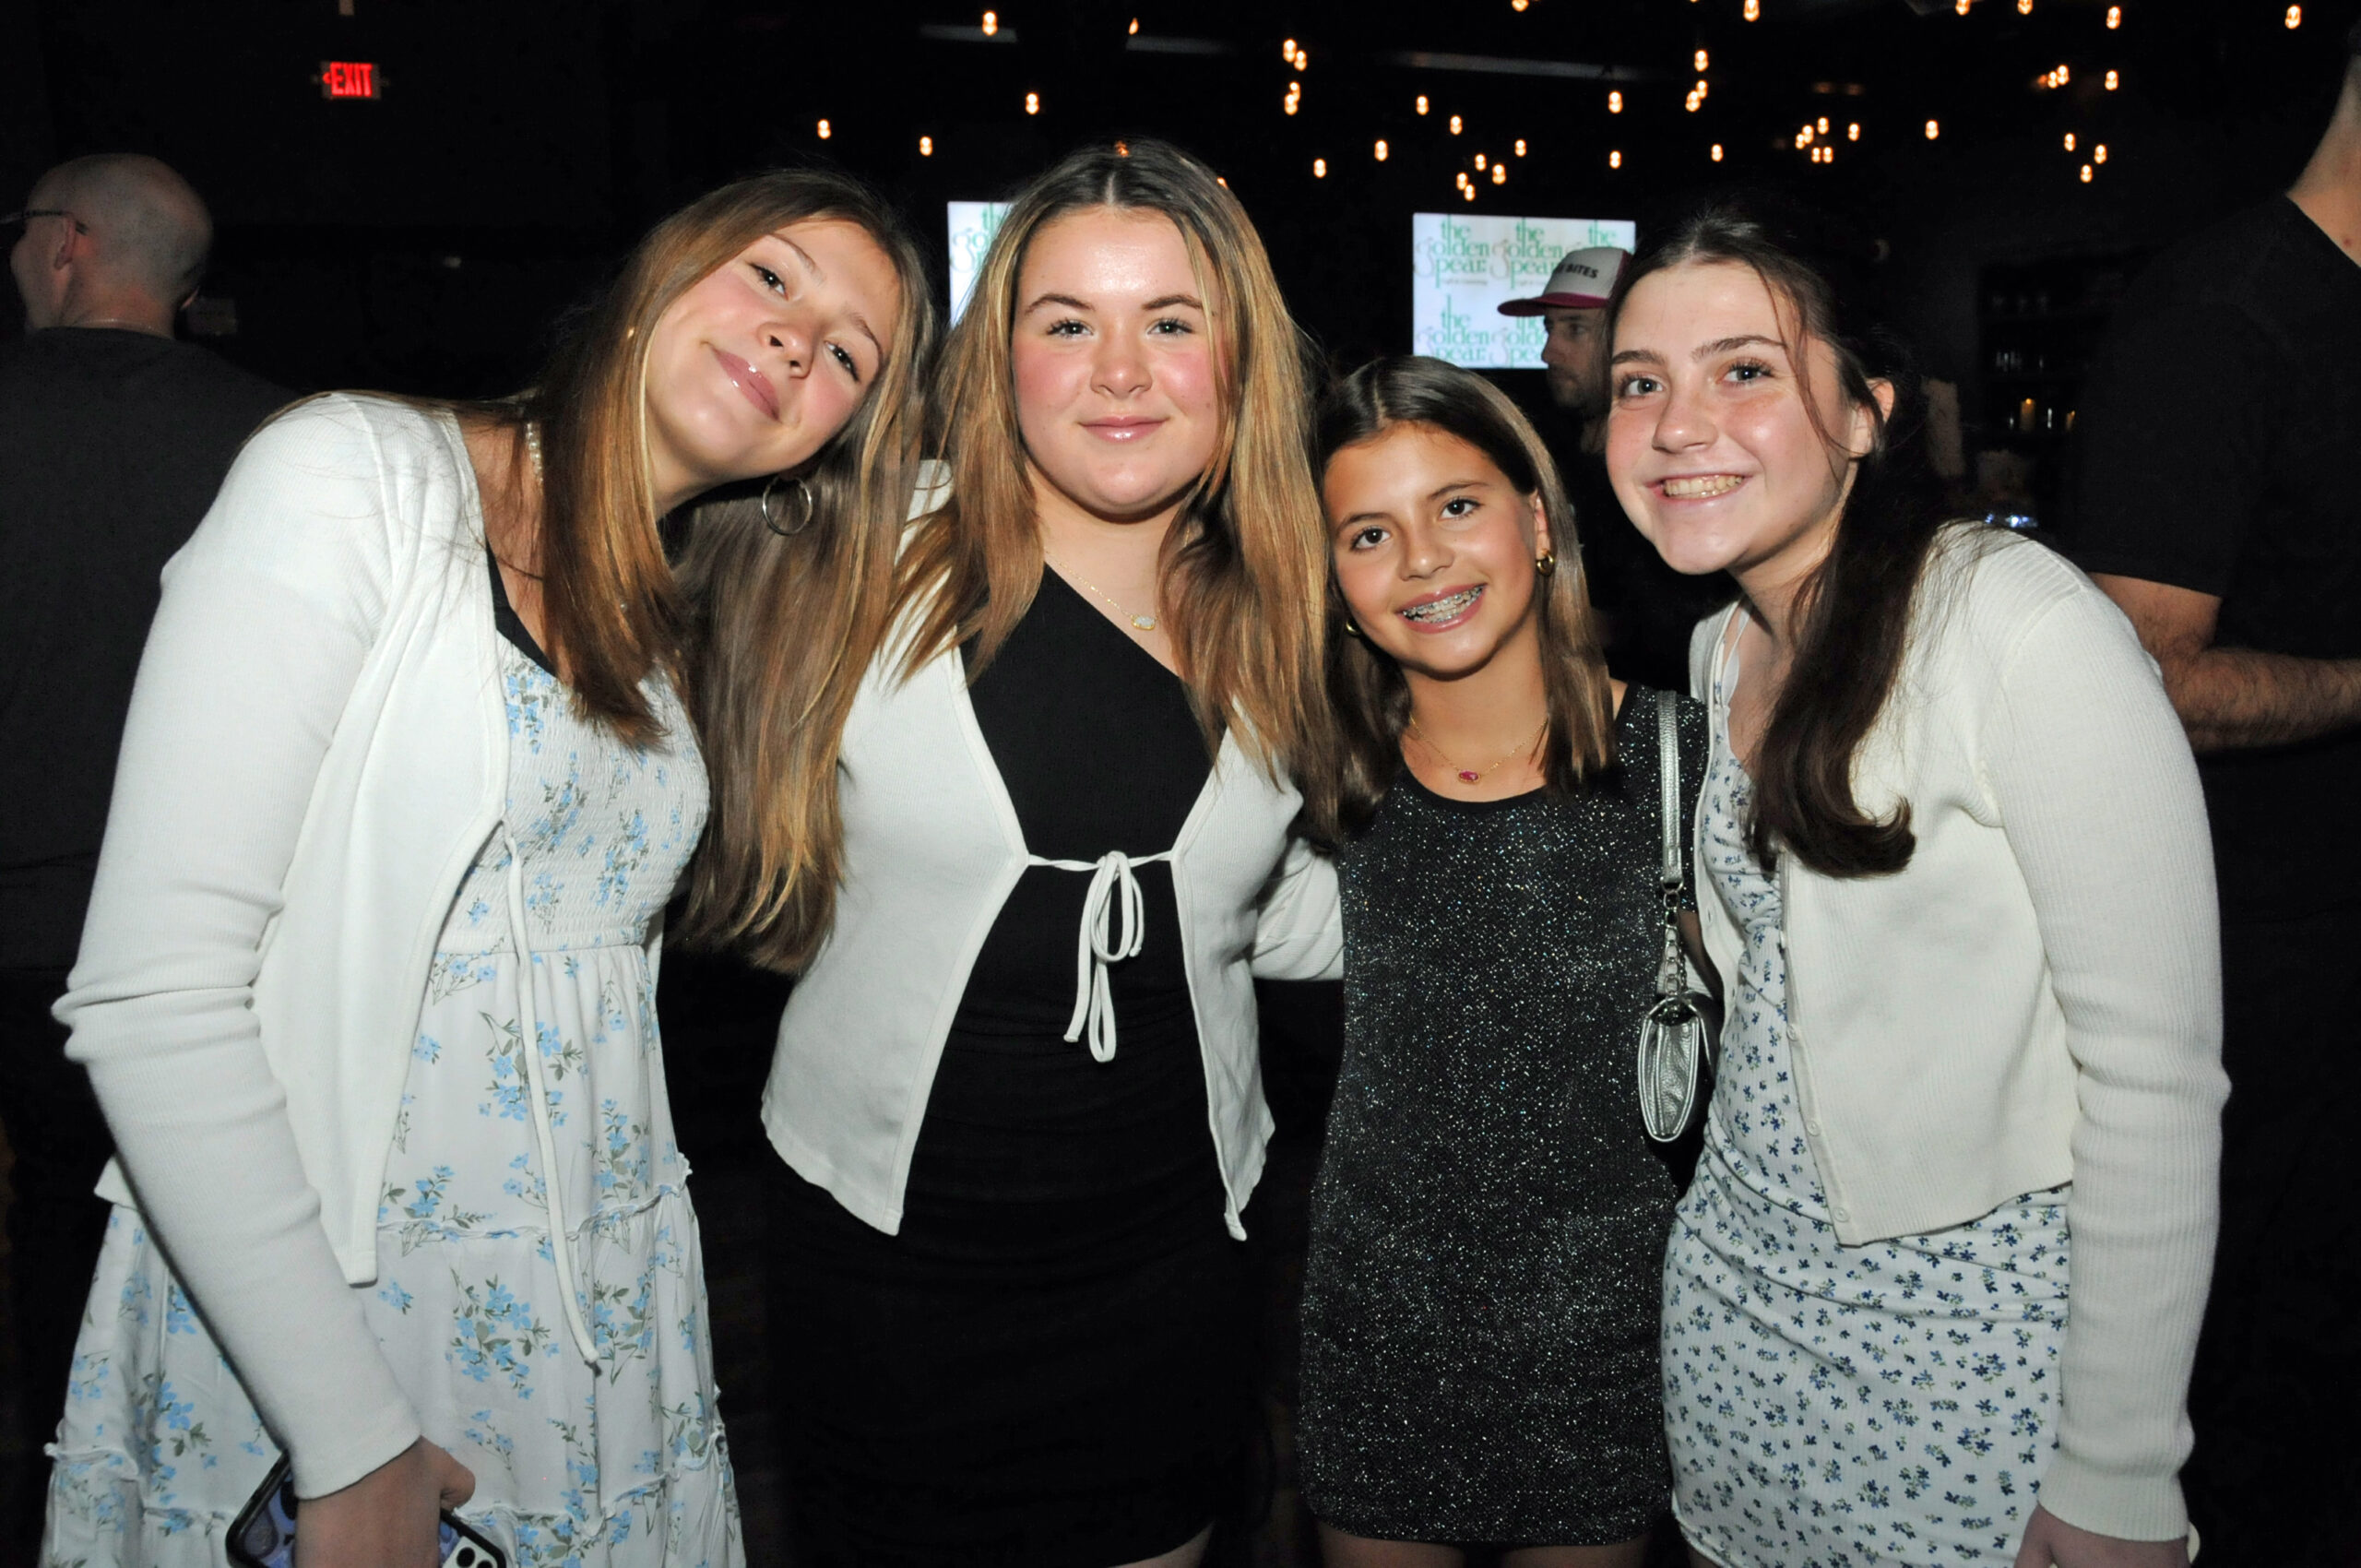 Bella Scheehser, Juliet Ambrose, Antonia Vogel and Juliana Dzubak at the Katy's Courage winter tasting fundraiser, 